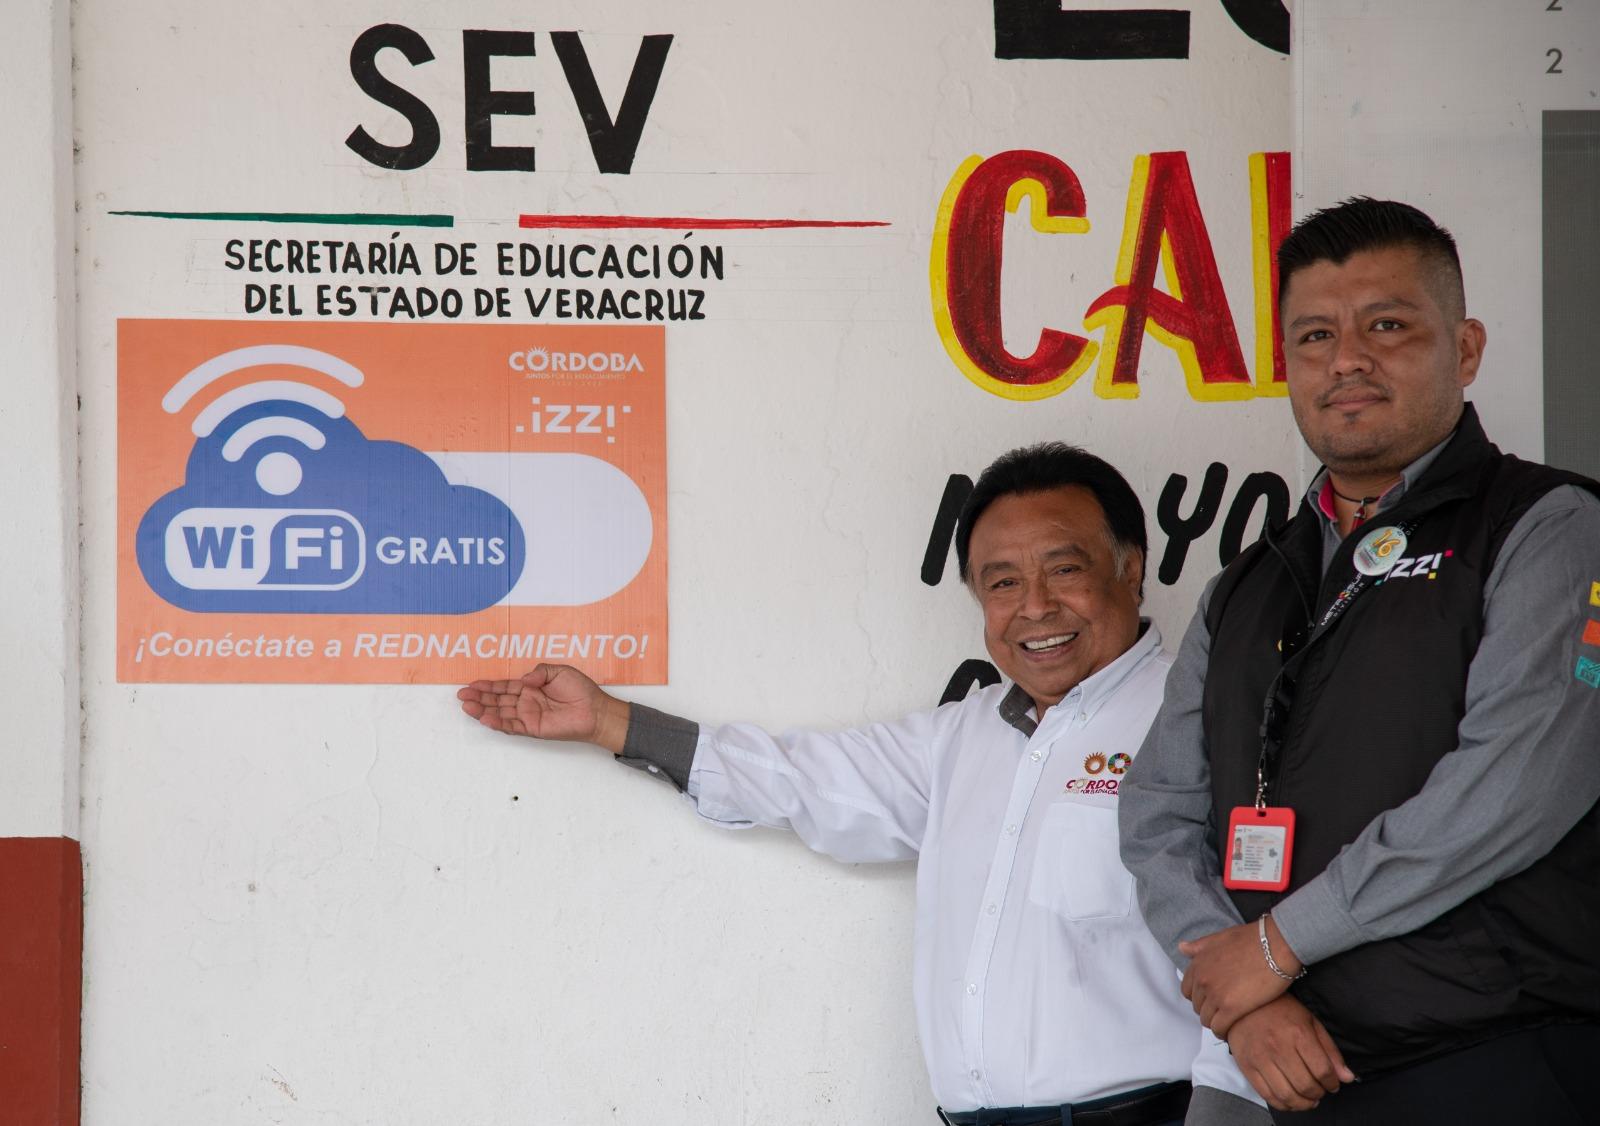 Inaugura Ayuntamiento red libre de Wifi en escuela y Centro de Salud